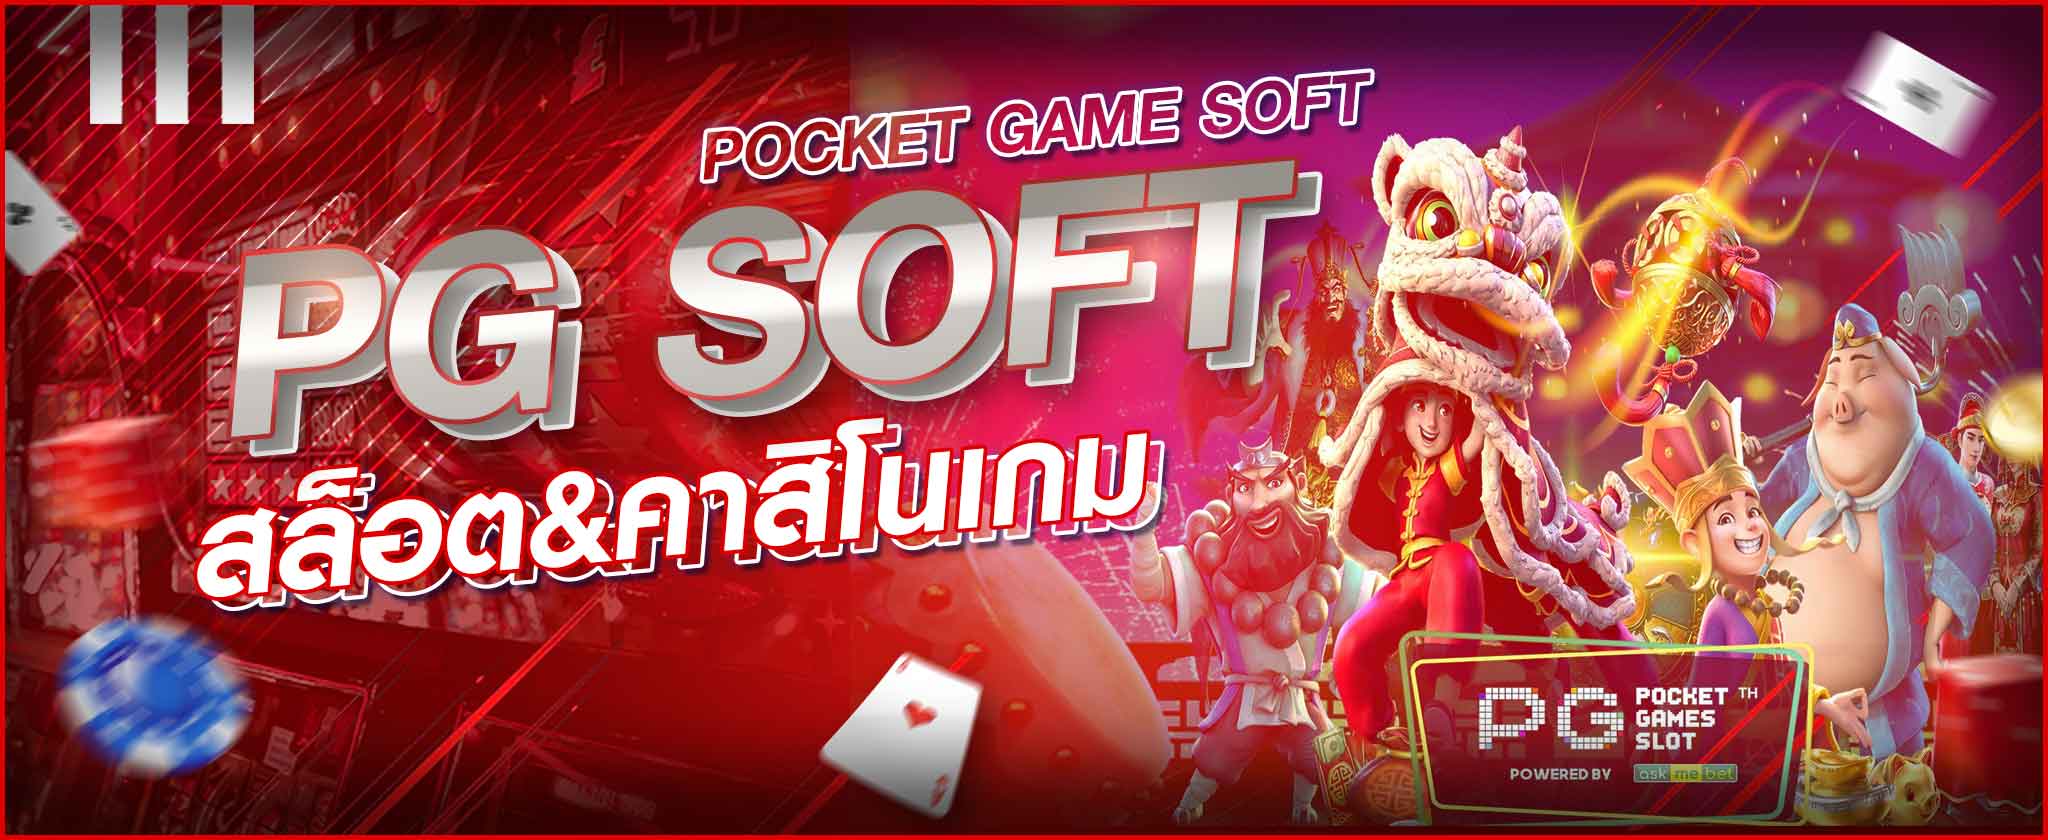 PG-POCKET-GAME-SOFT